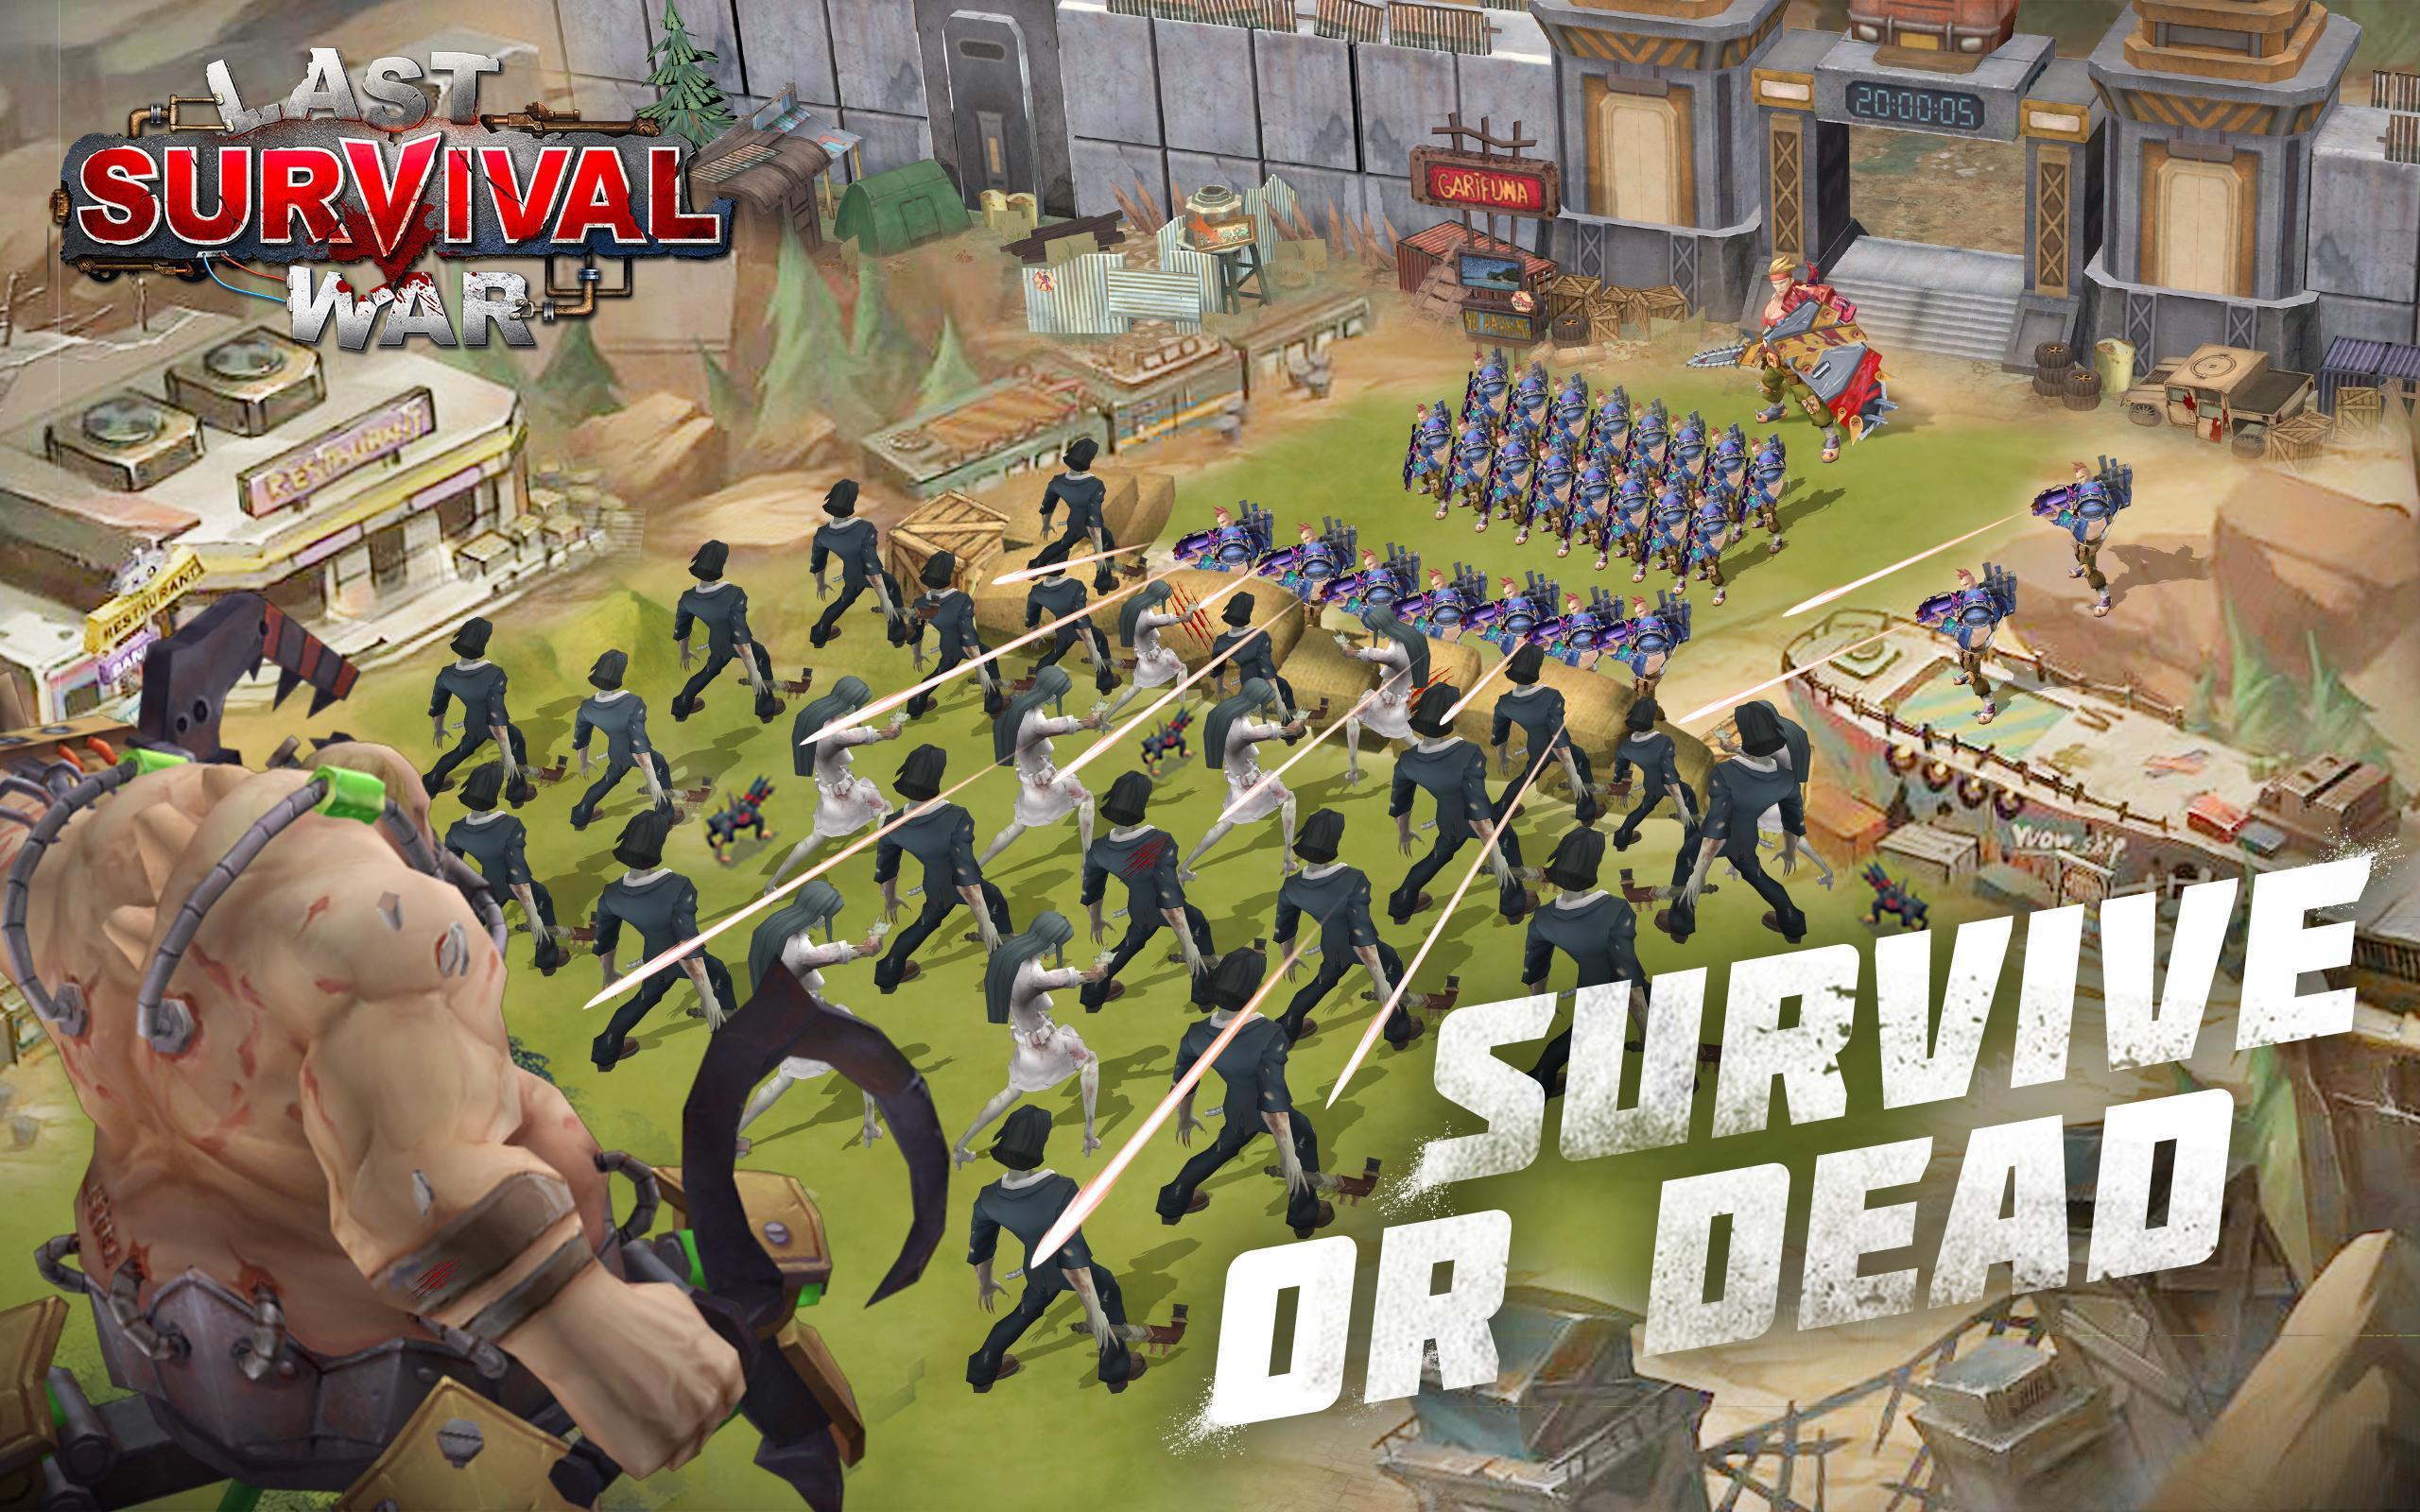 Screenshot of Last Survival War: Apocalypse